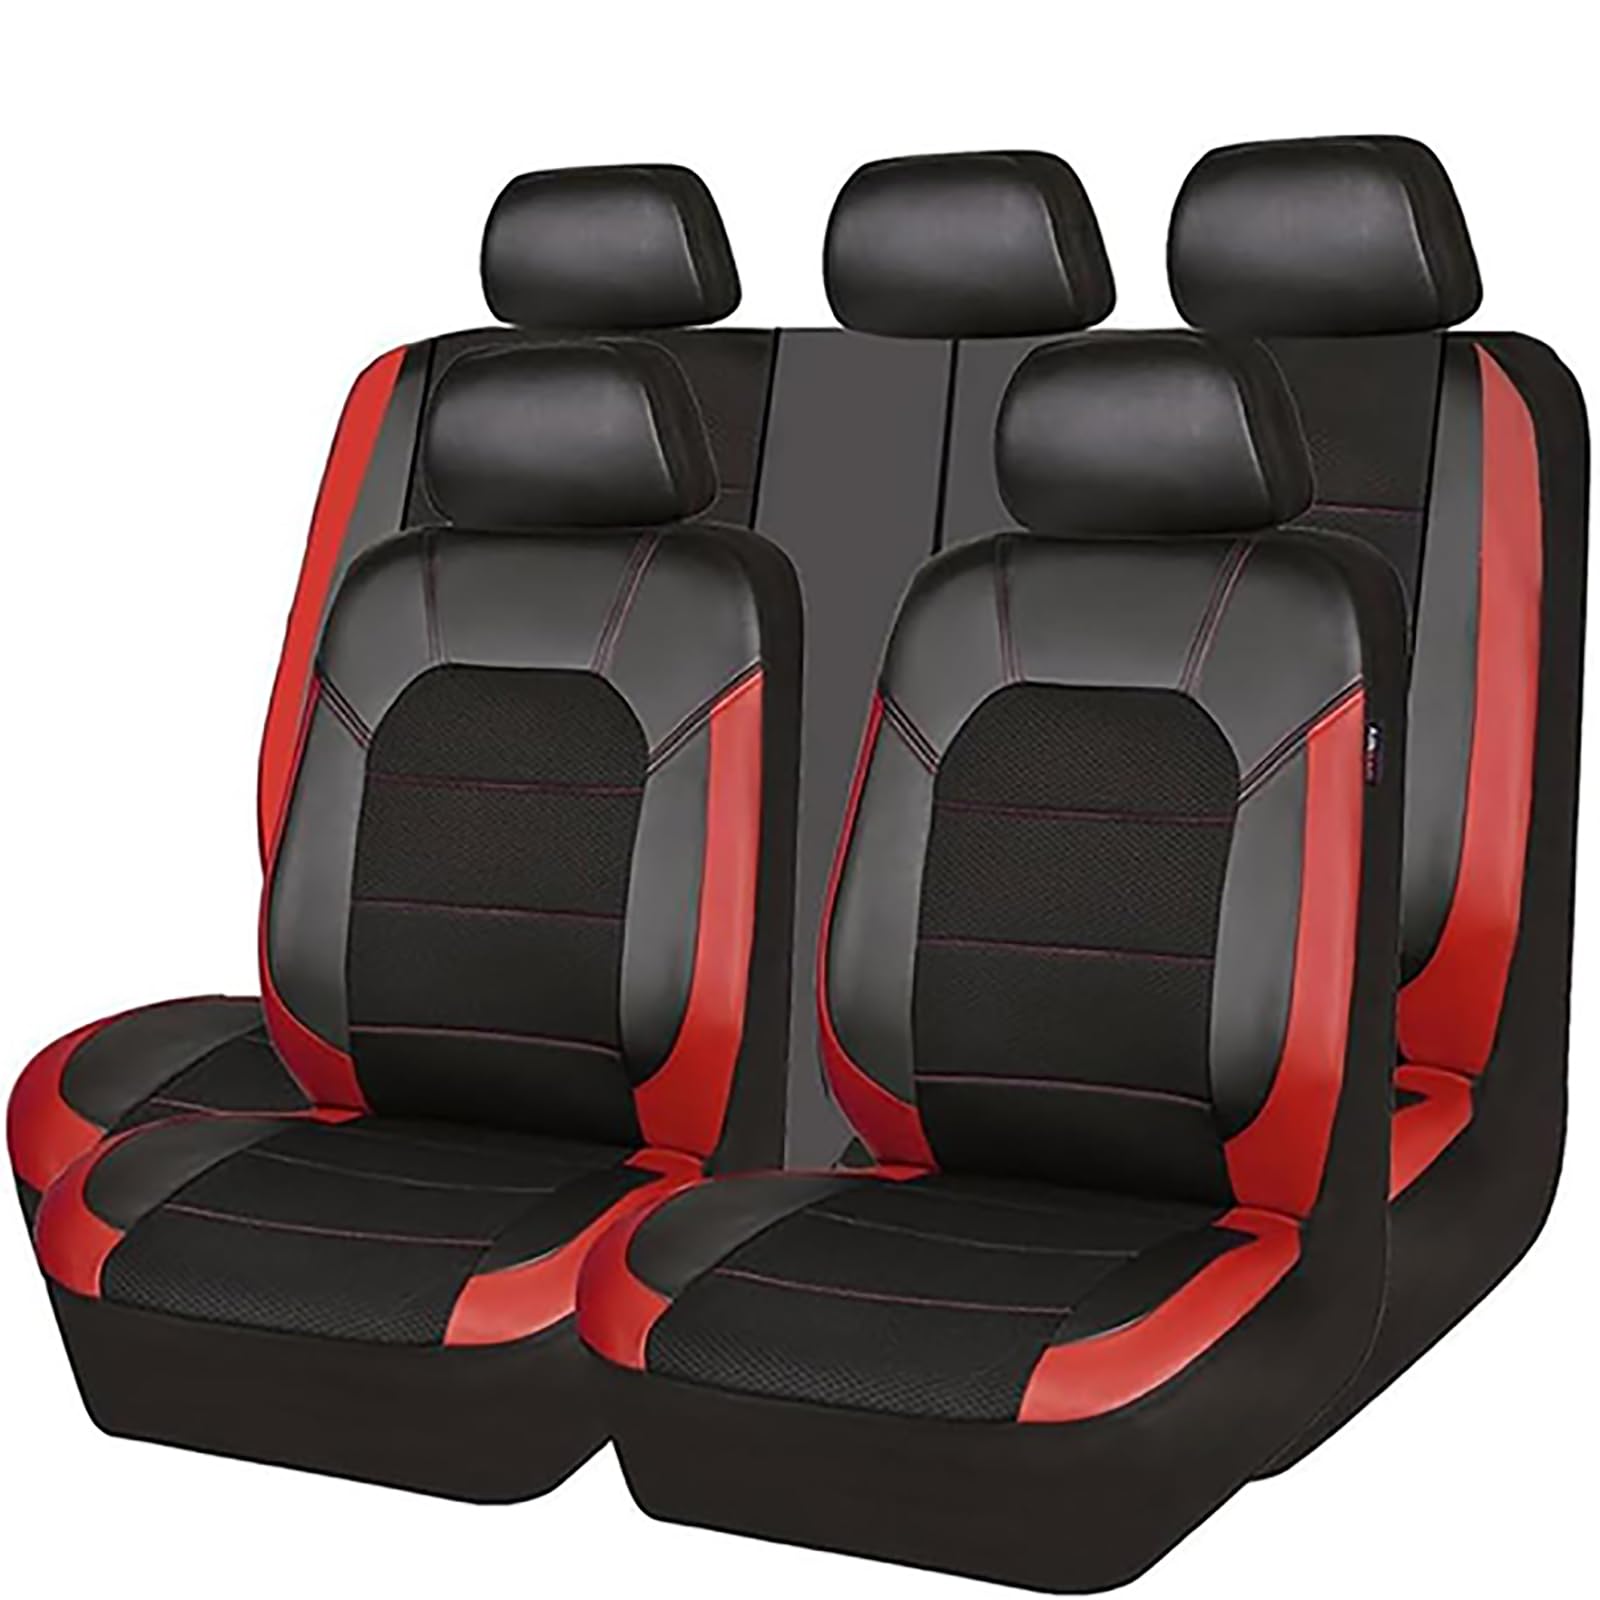 Auto Leder Sitzkissen Für Peugeot 206 CC SW, 5 Sitzer Full Set SitzbezüGe Schonbezug Vorne Rückbank Sitzschutz Compatible Airbag Innenraum Zubehör,D/Red von EYHQKRTR